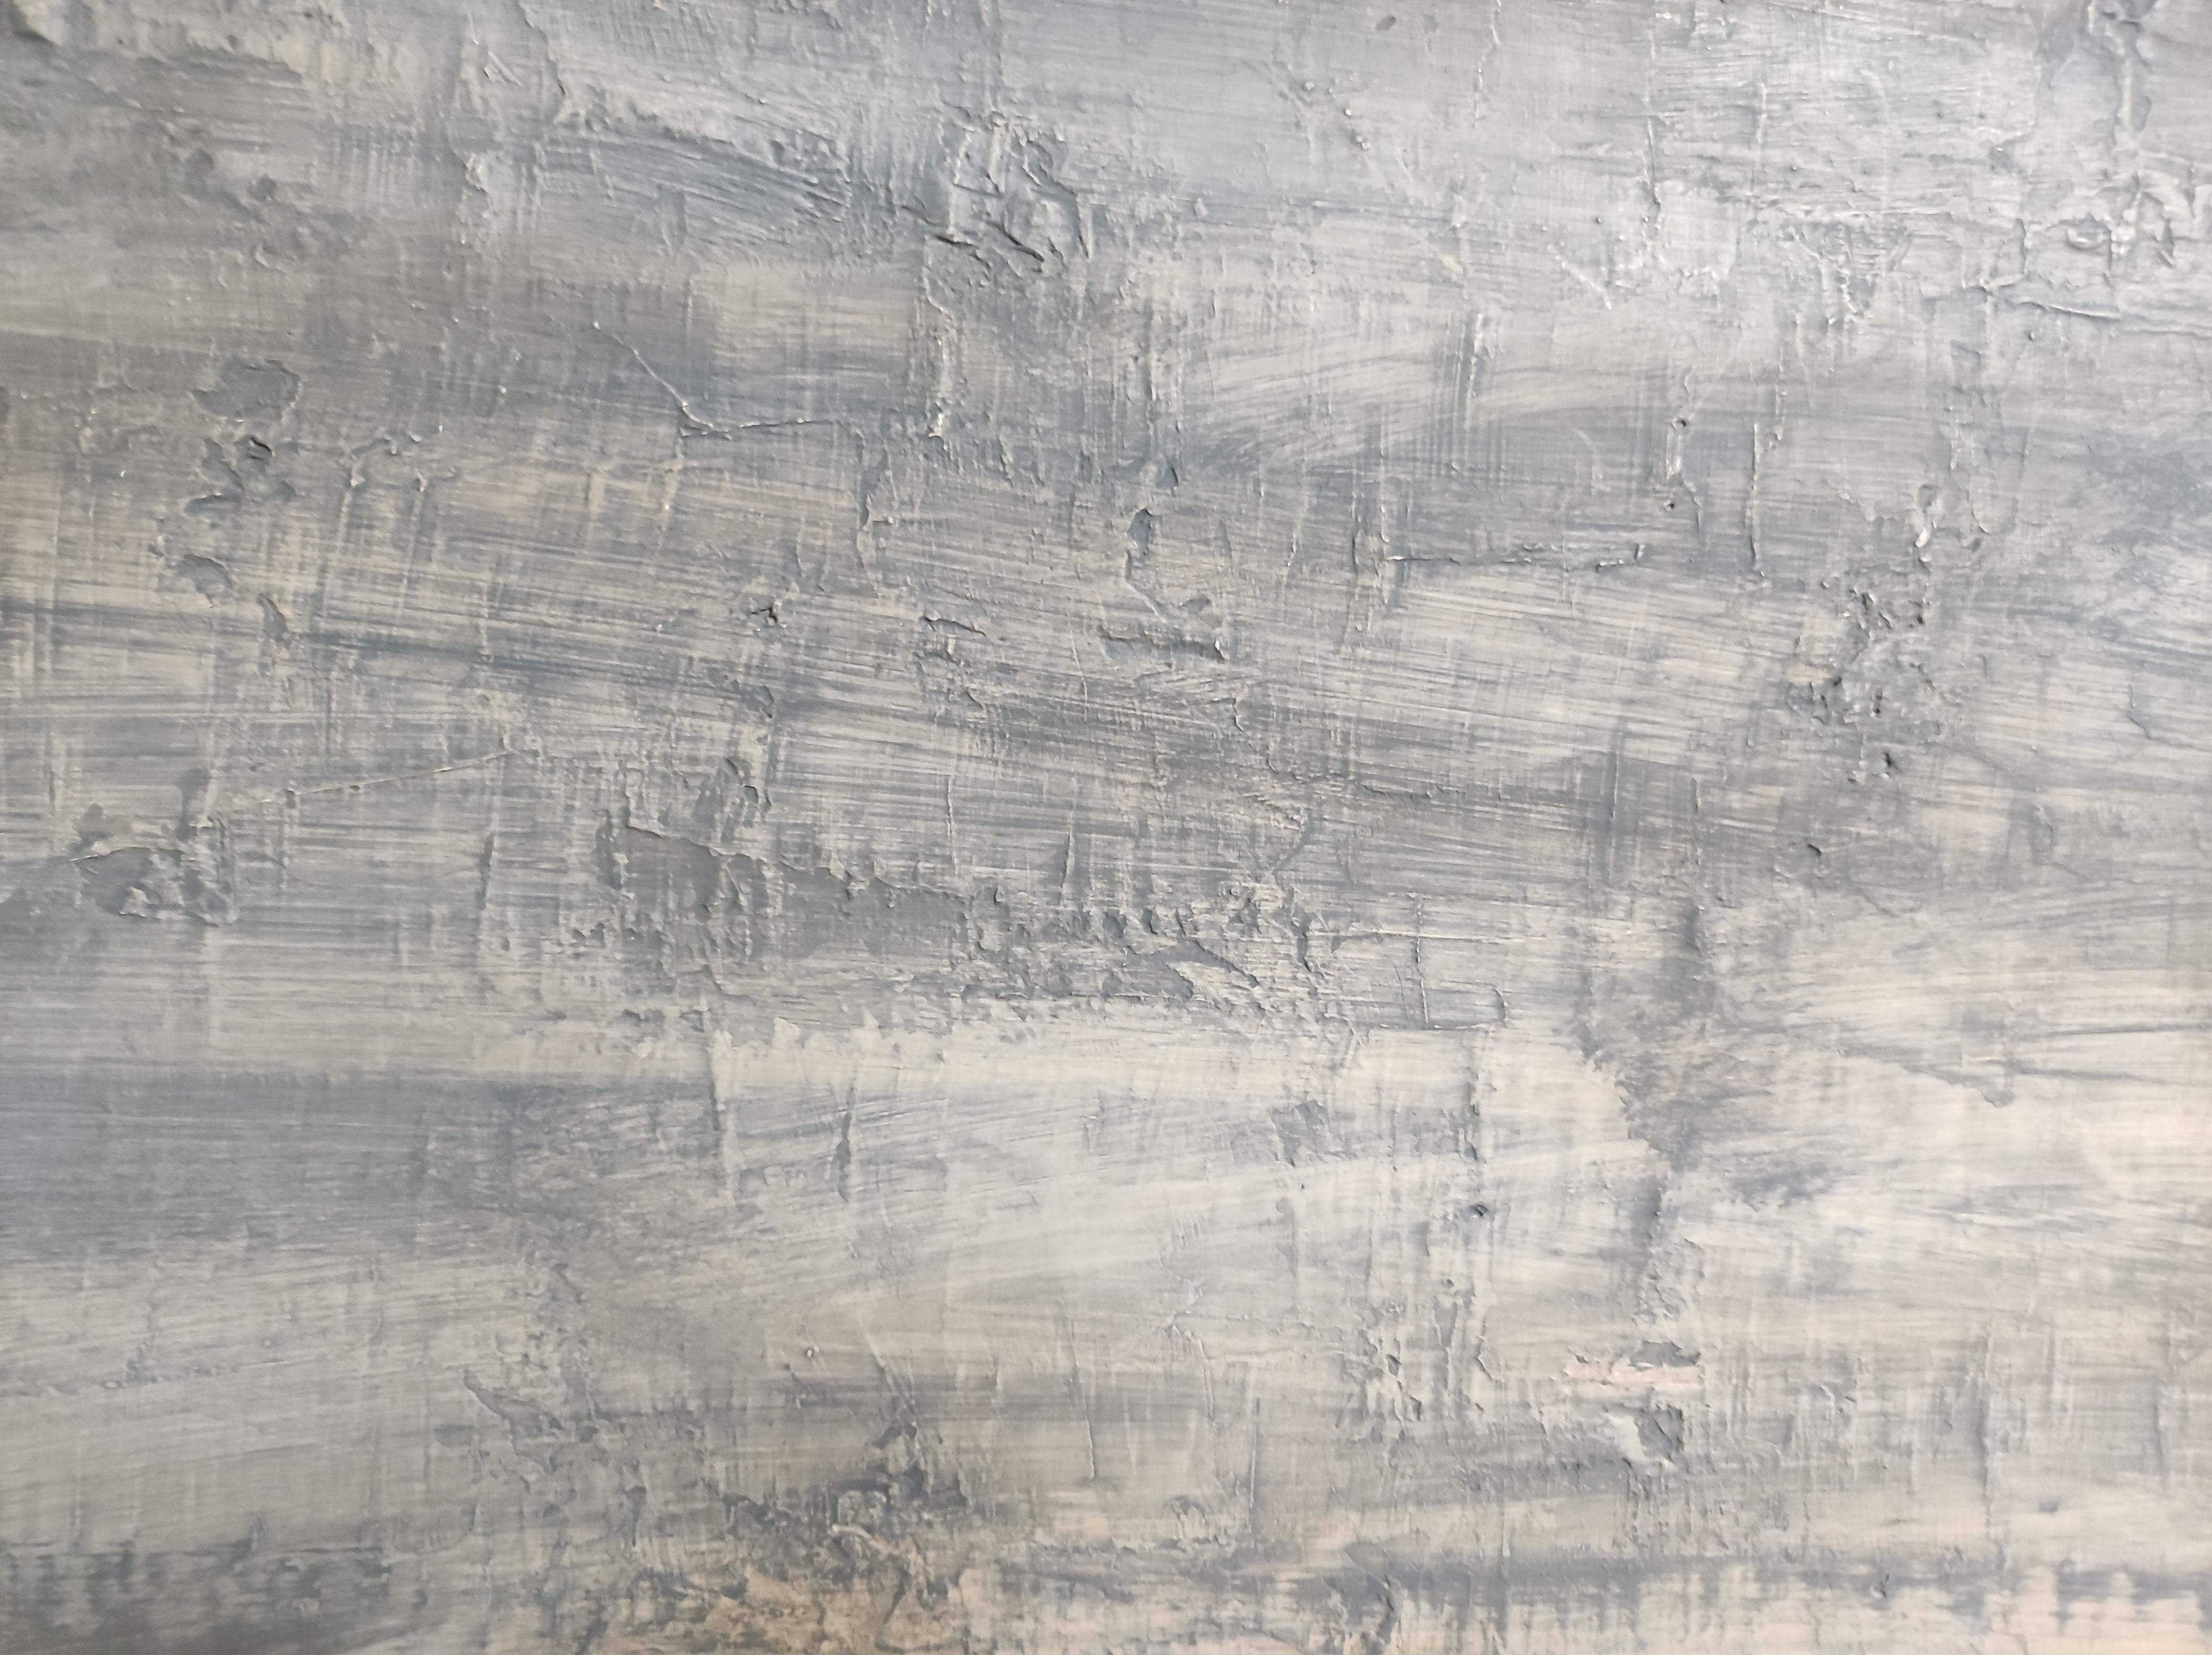 lumieres du soir, paysage abstrait, huile sur toile 95 x 124 cm For Sale 2